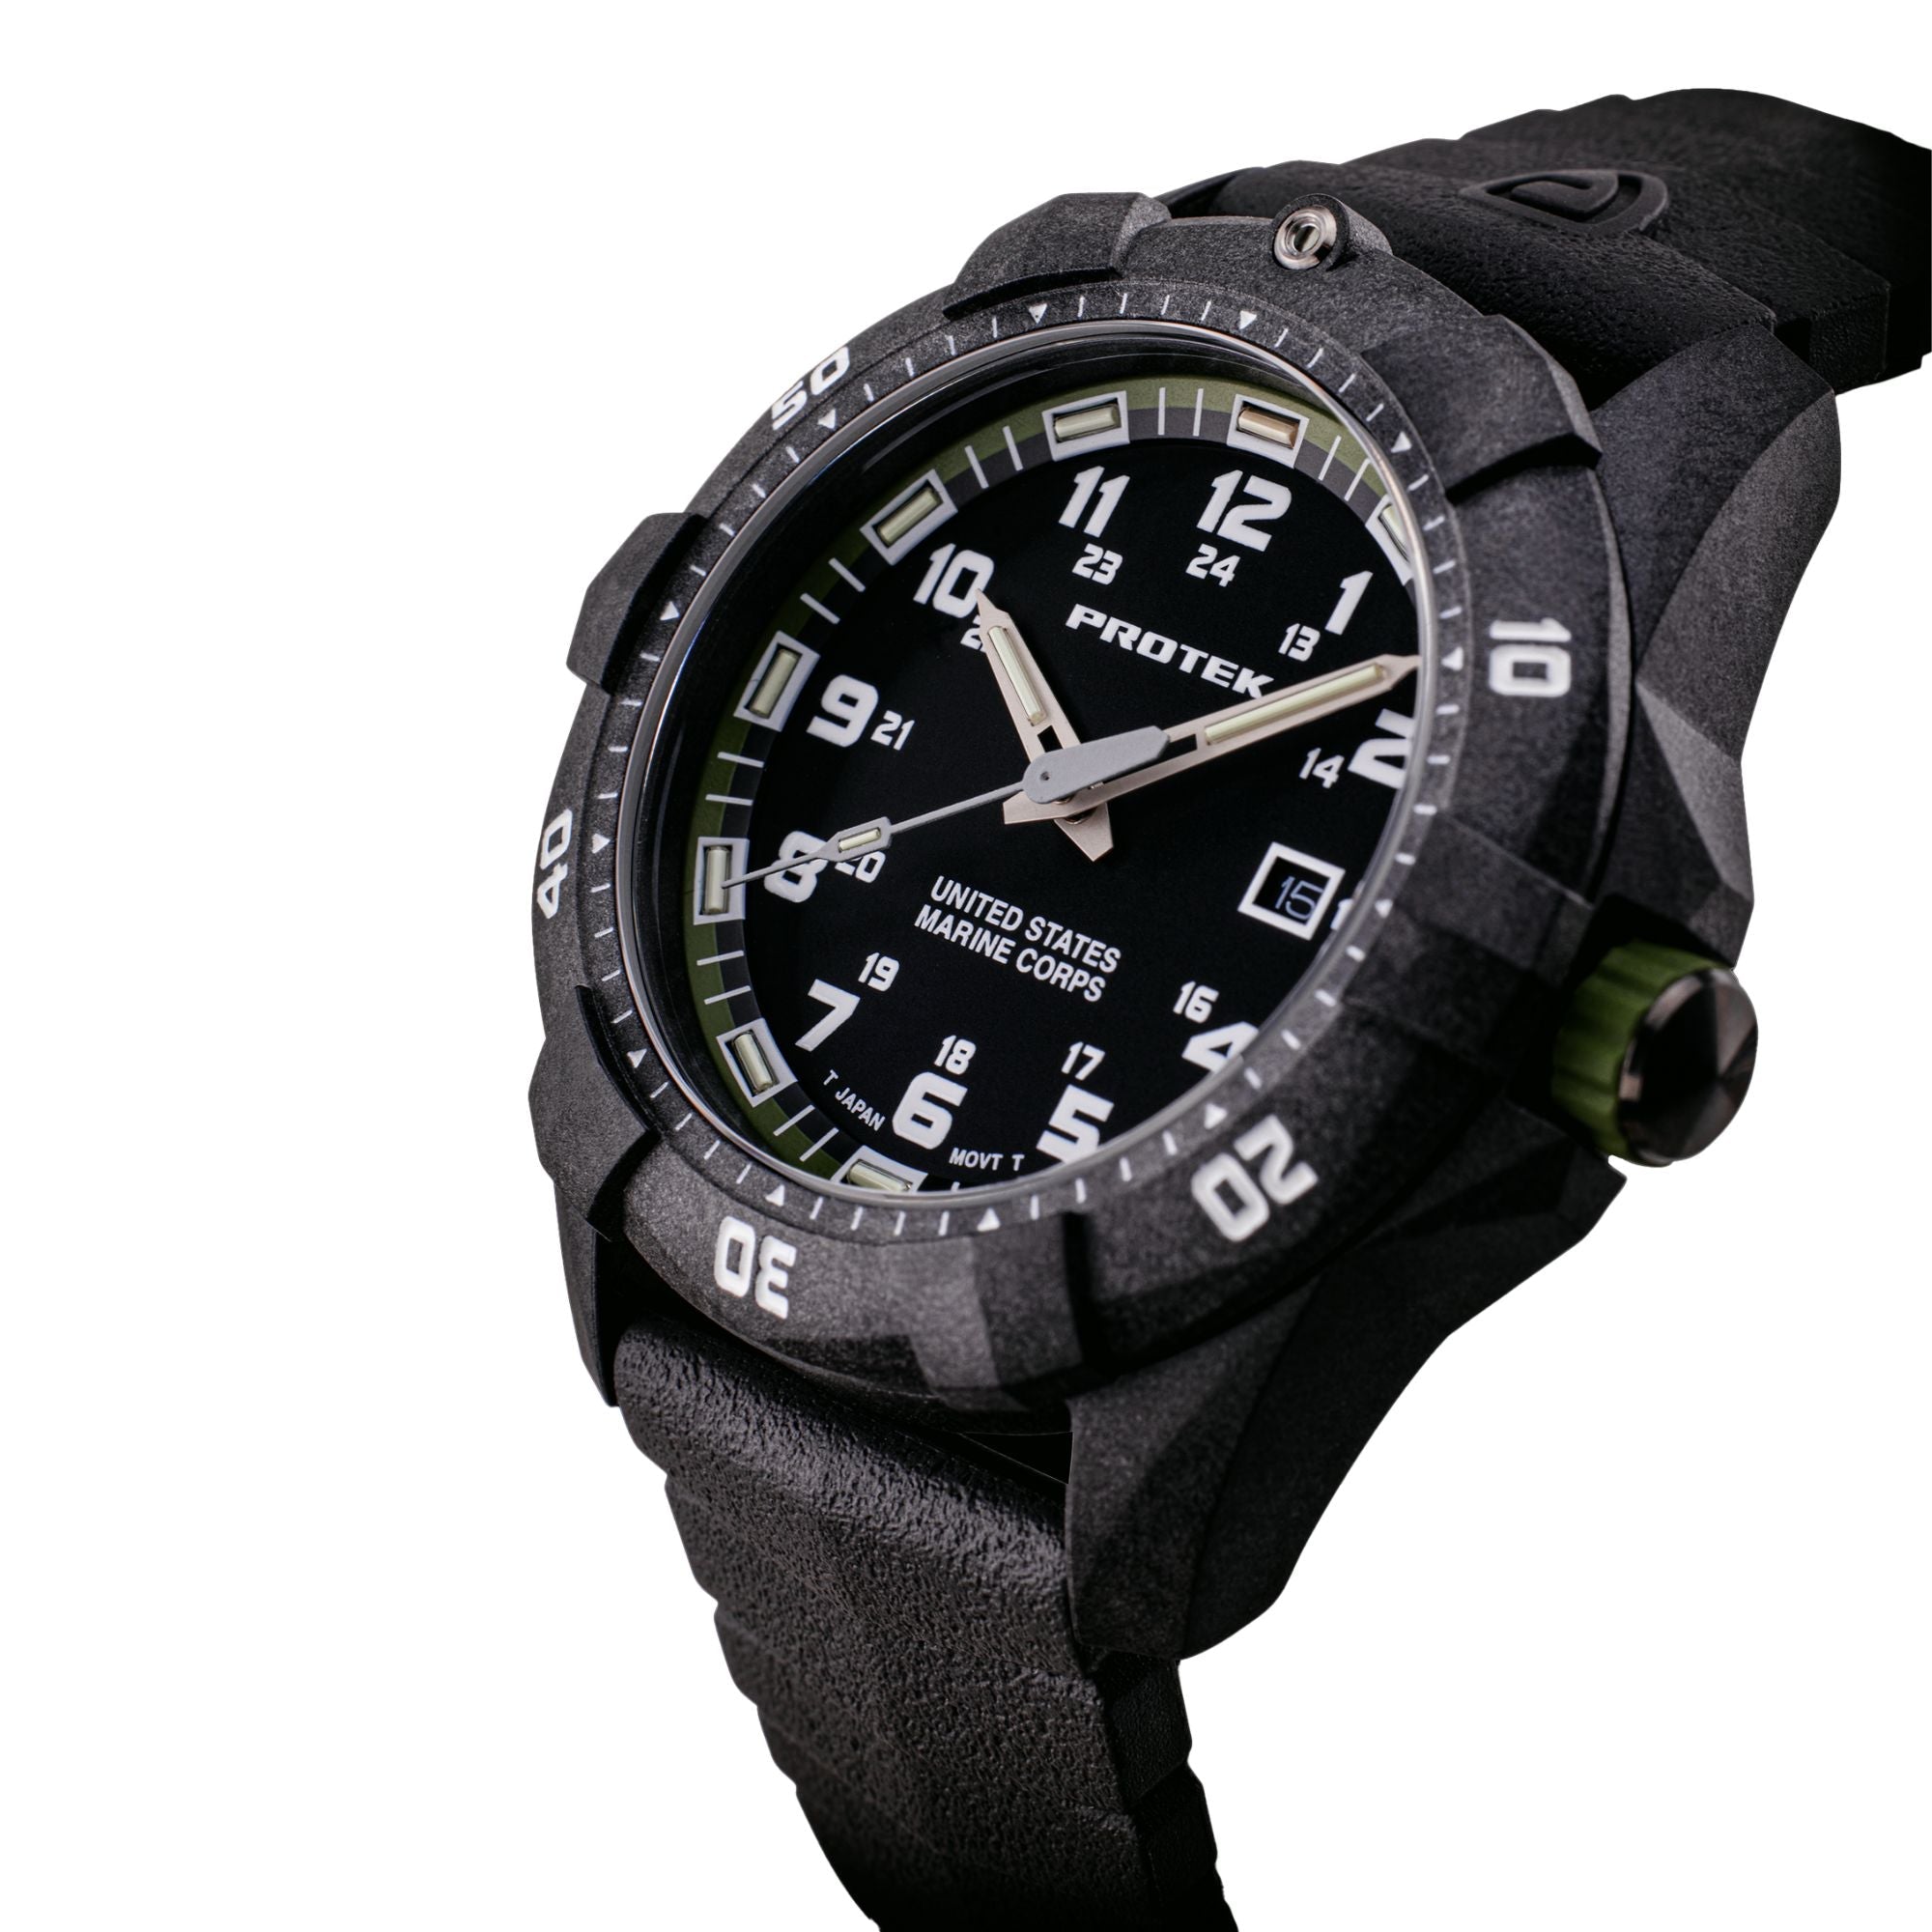 ProTek USMC Carbon Composite Dive Watch - Carbon/Black/Green (Black Band)